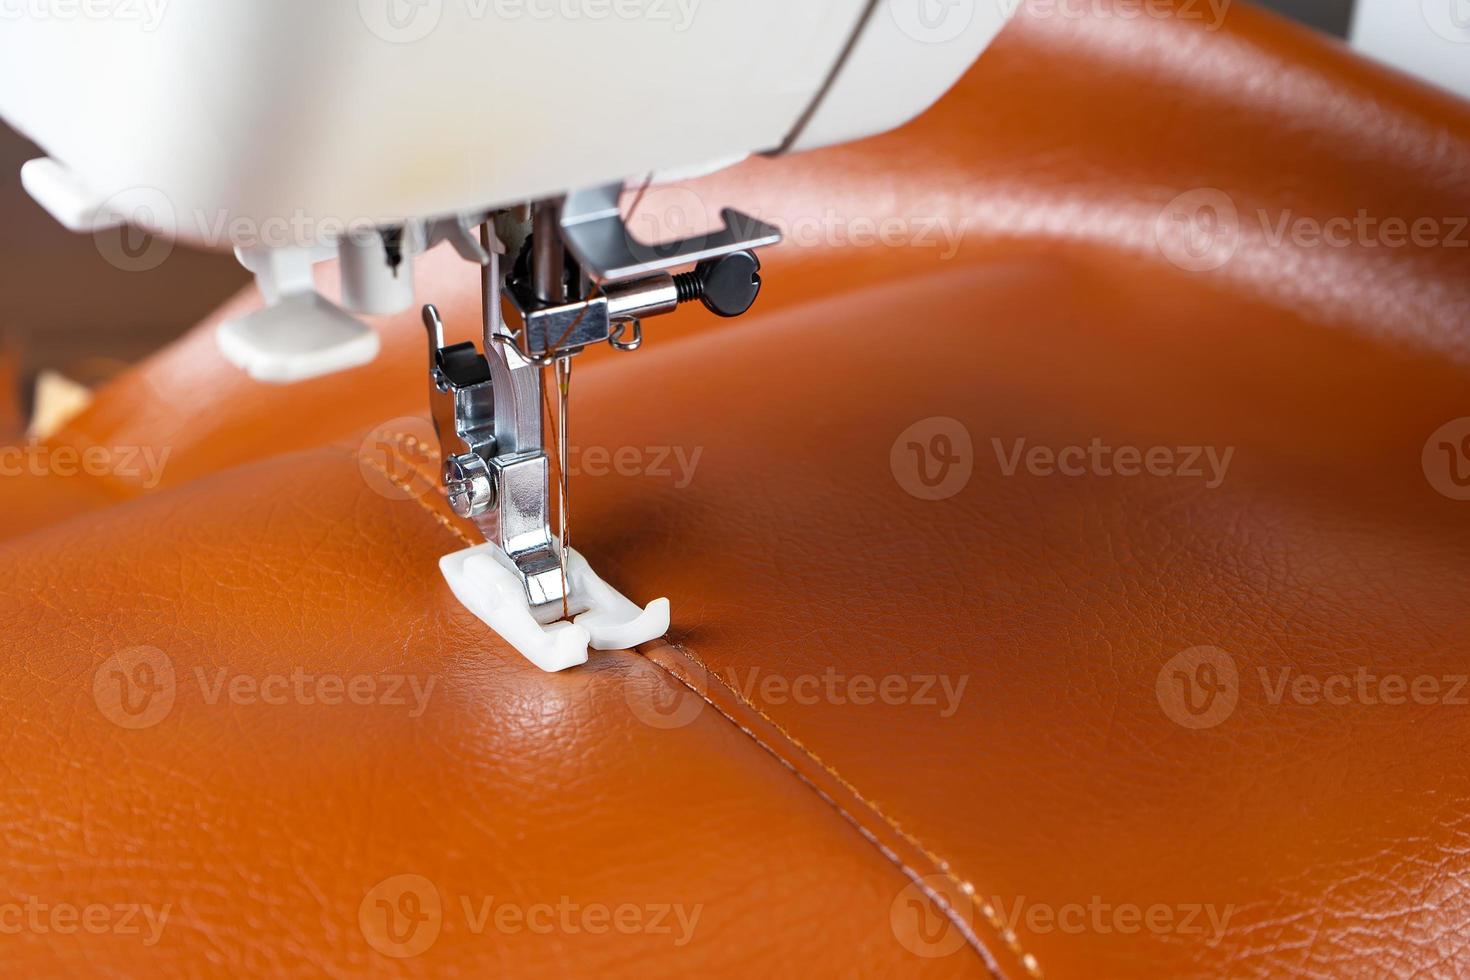 calcador de máquina de costura moderna com uma agulha costura couro marrom foto